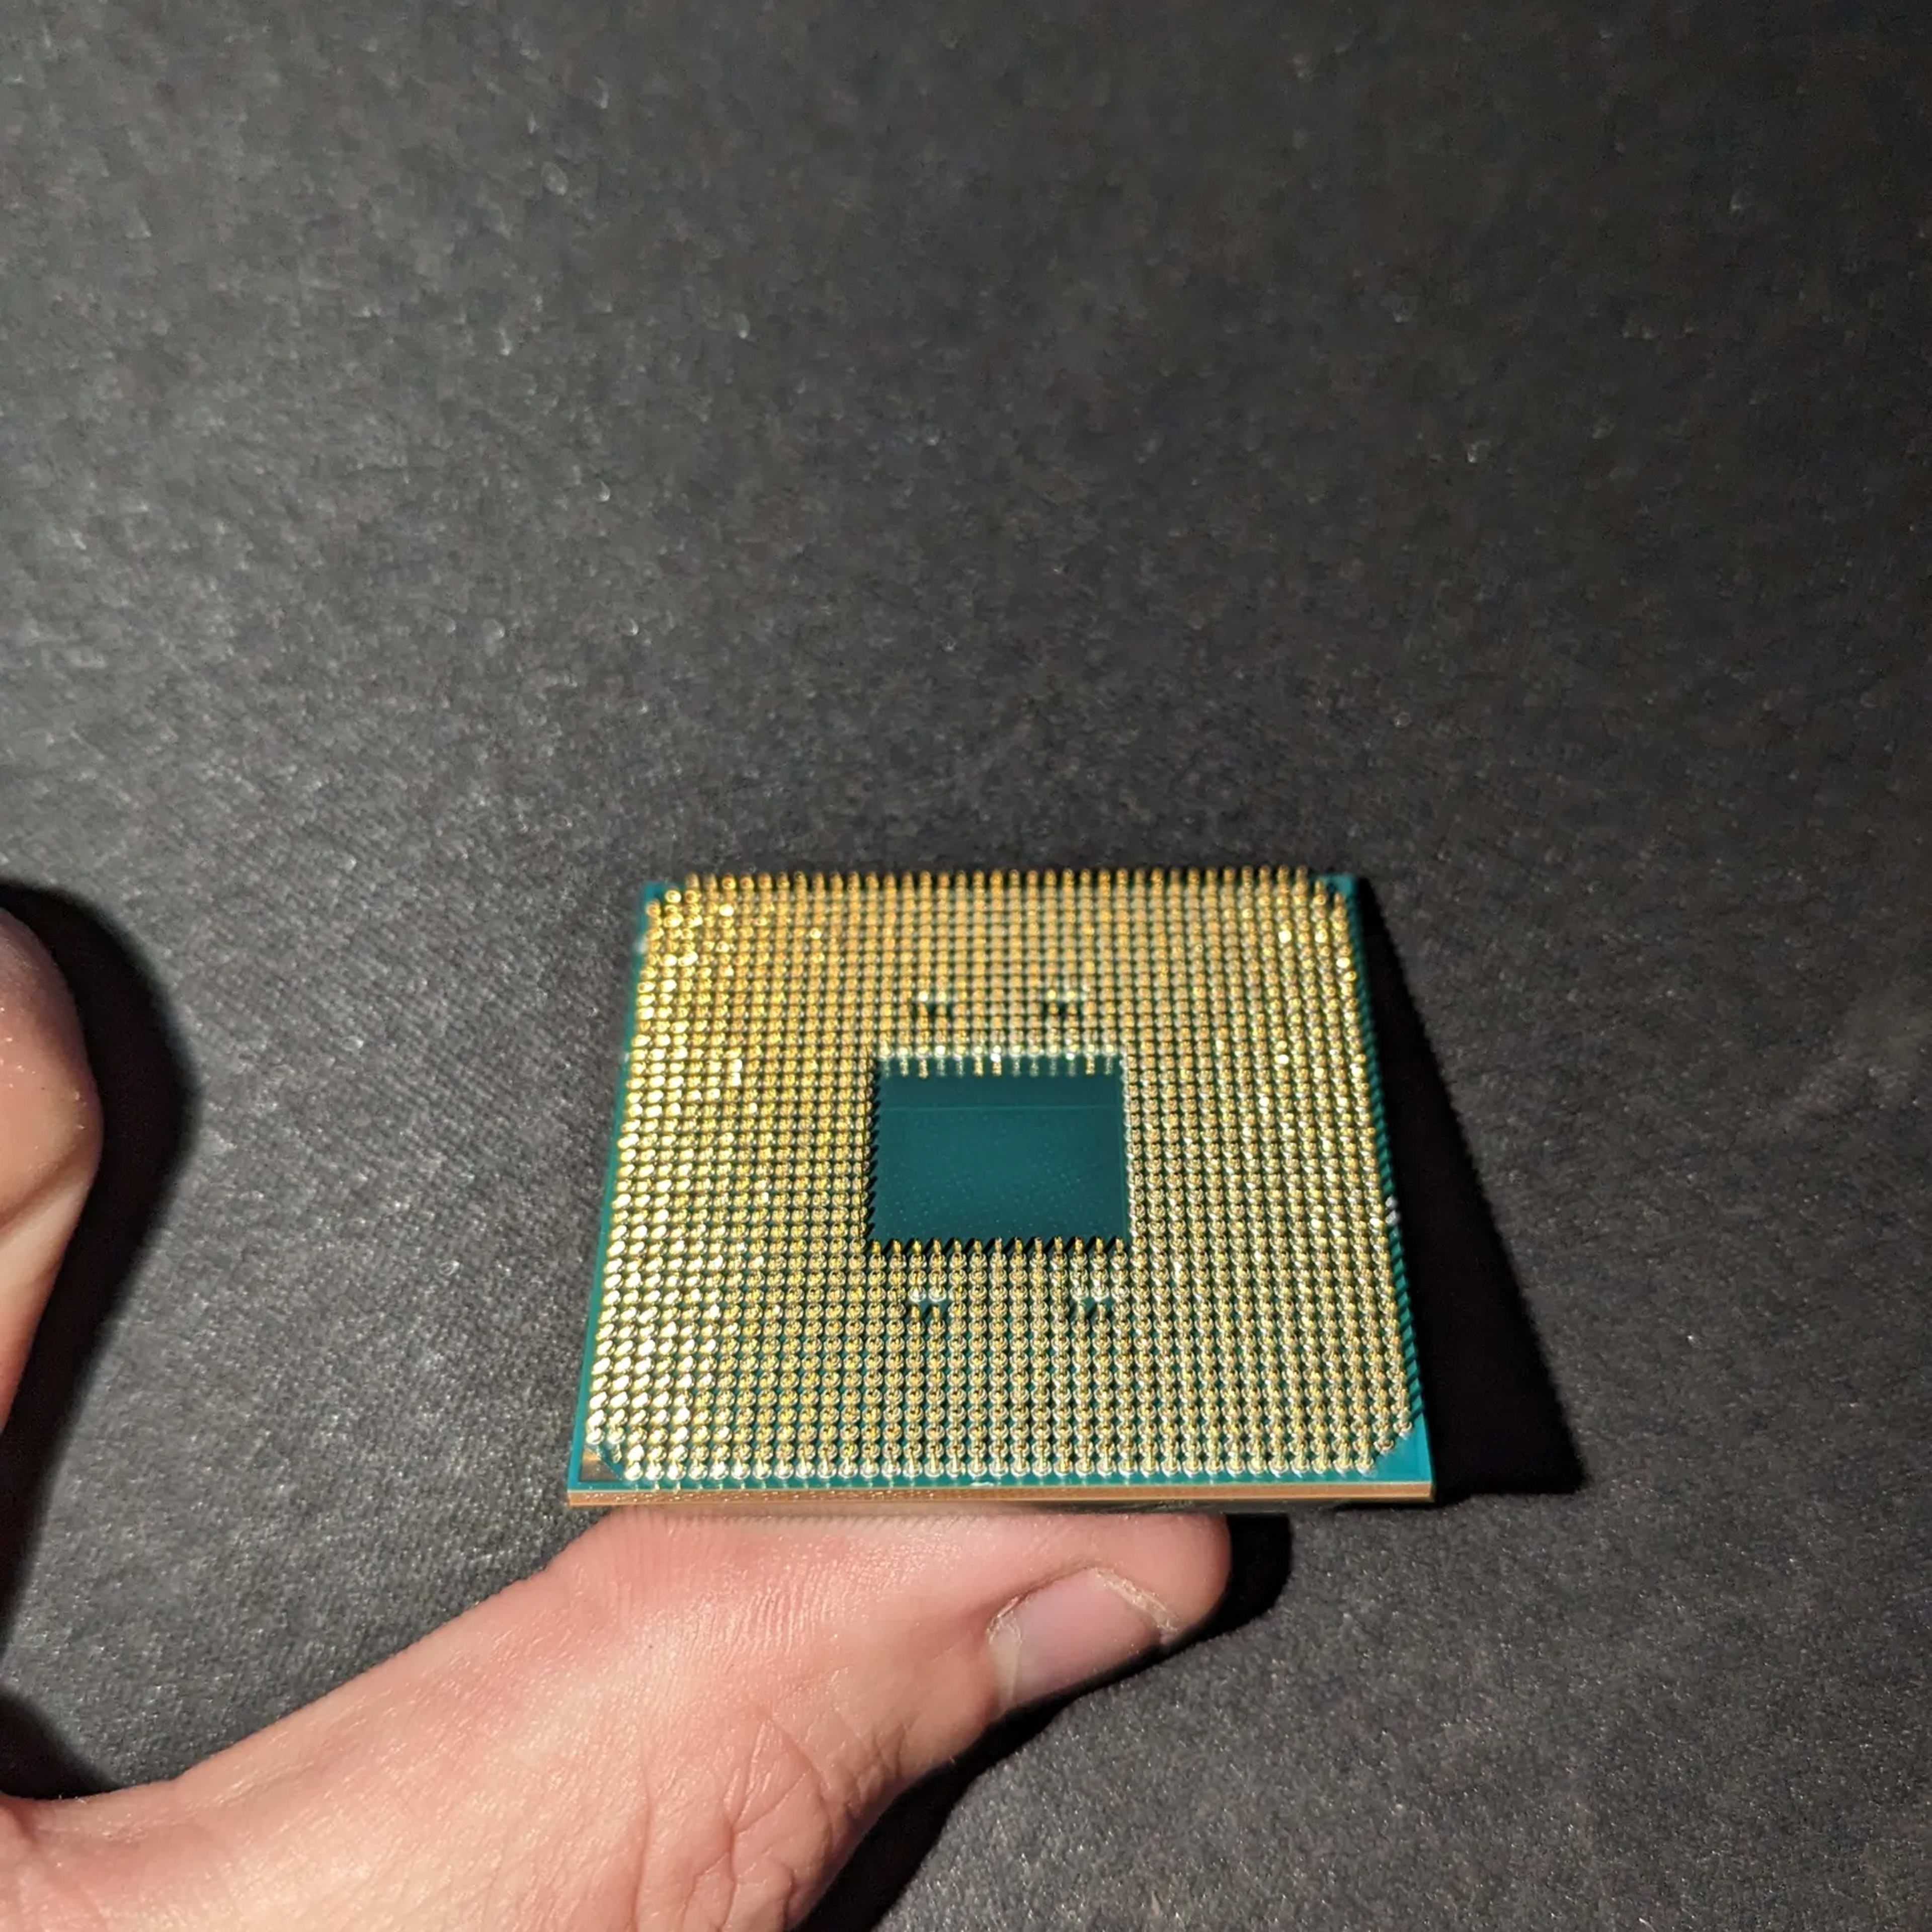 USED - AMD Ryzen 5 3600 3.6 GHz 6-Core Processor